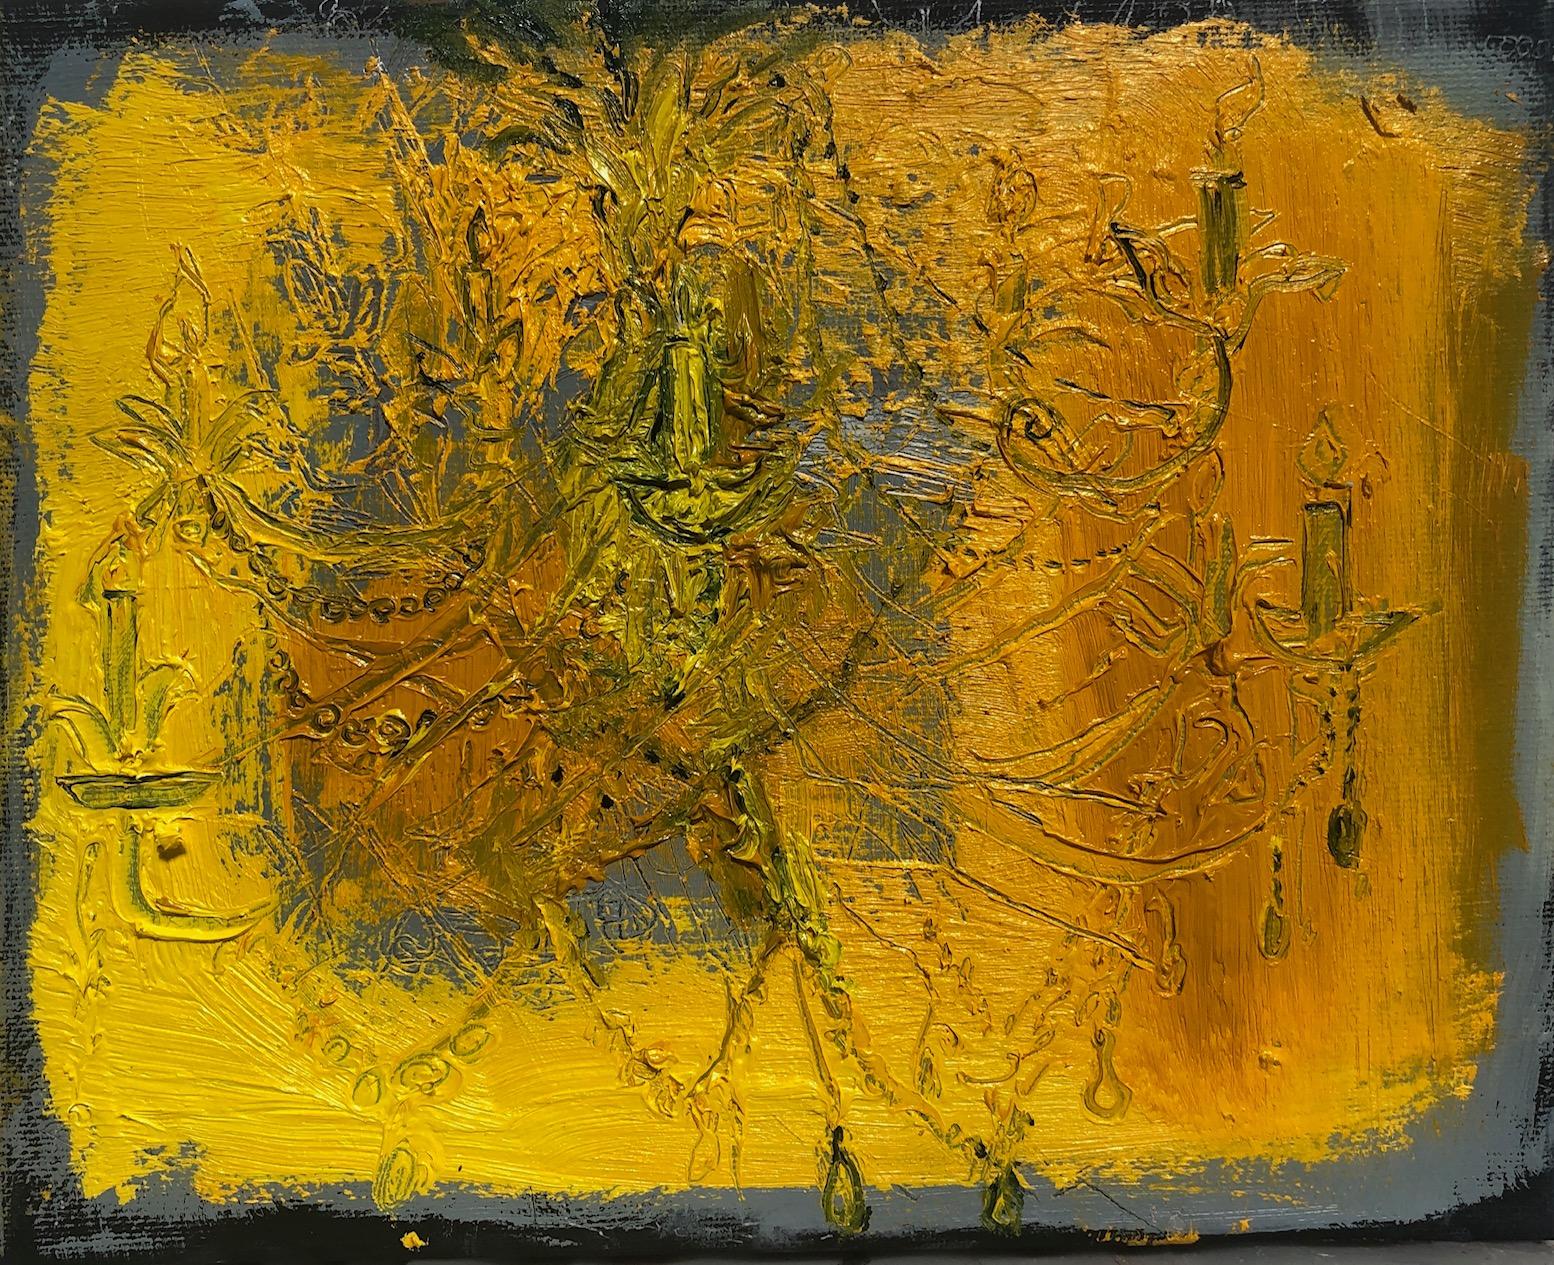 Lizbeth Mitty, dimanche 2019, huile sur toile, 15,2 x 20,3 cm, Symbolist